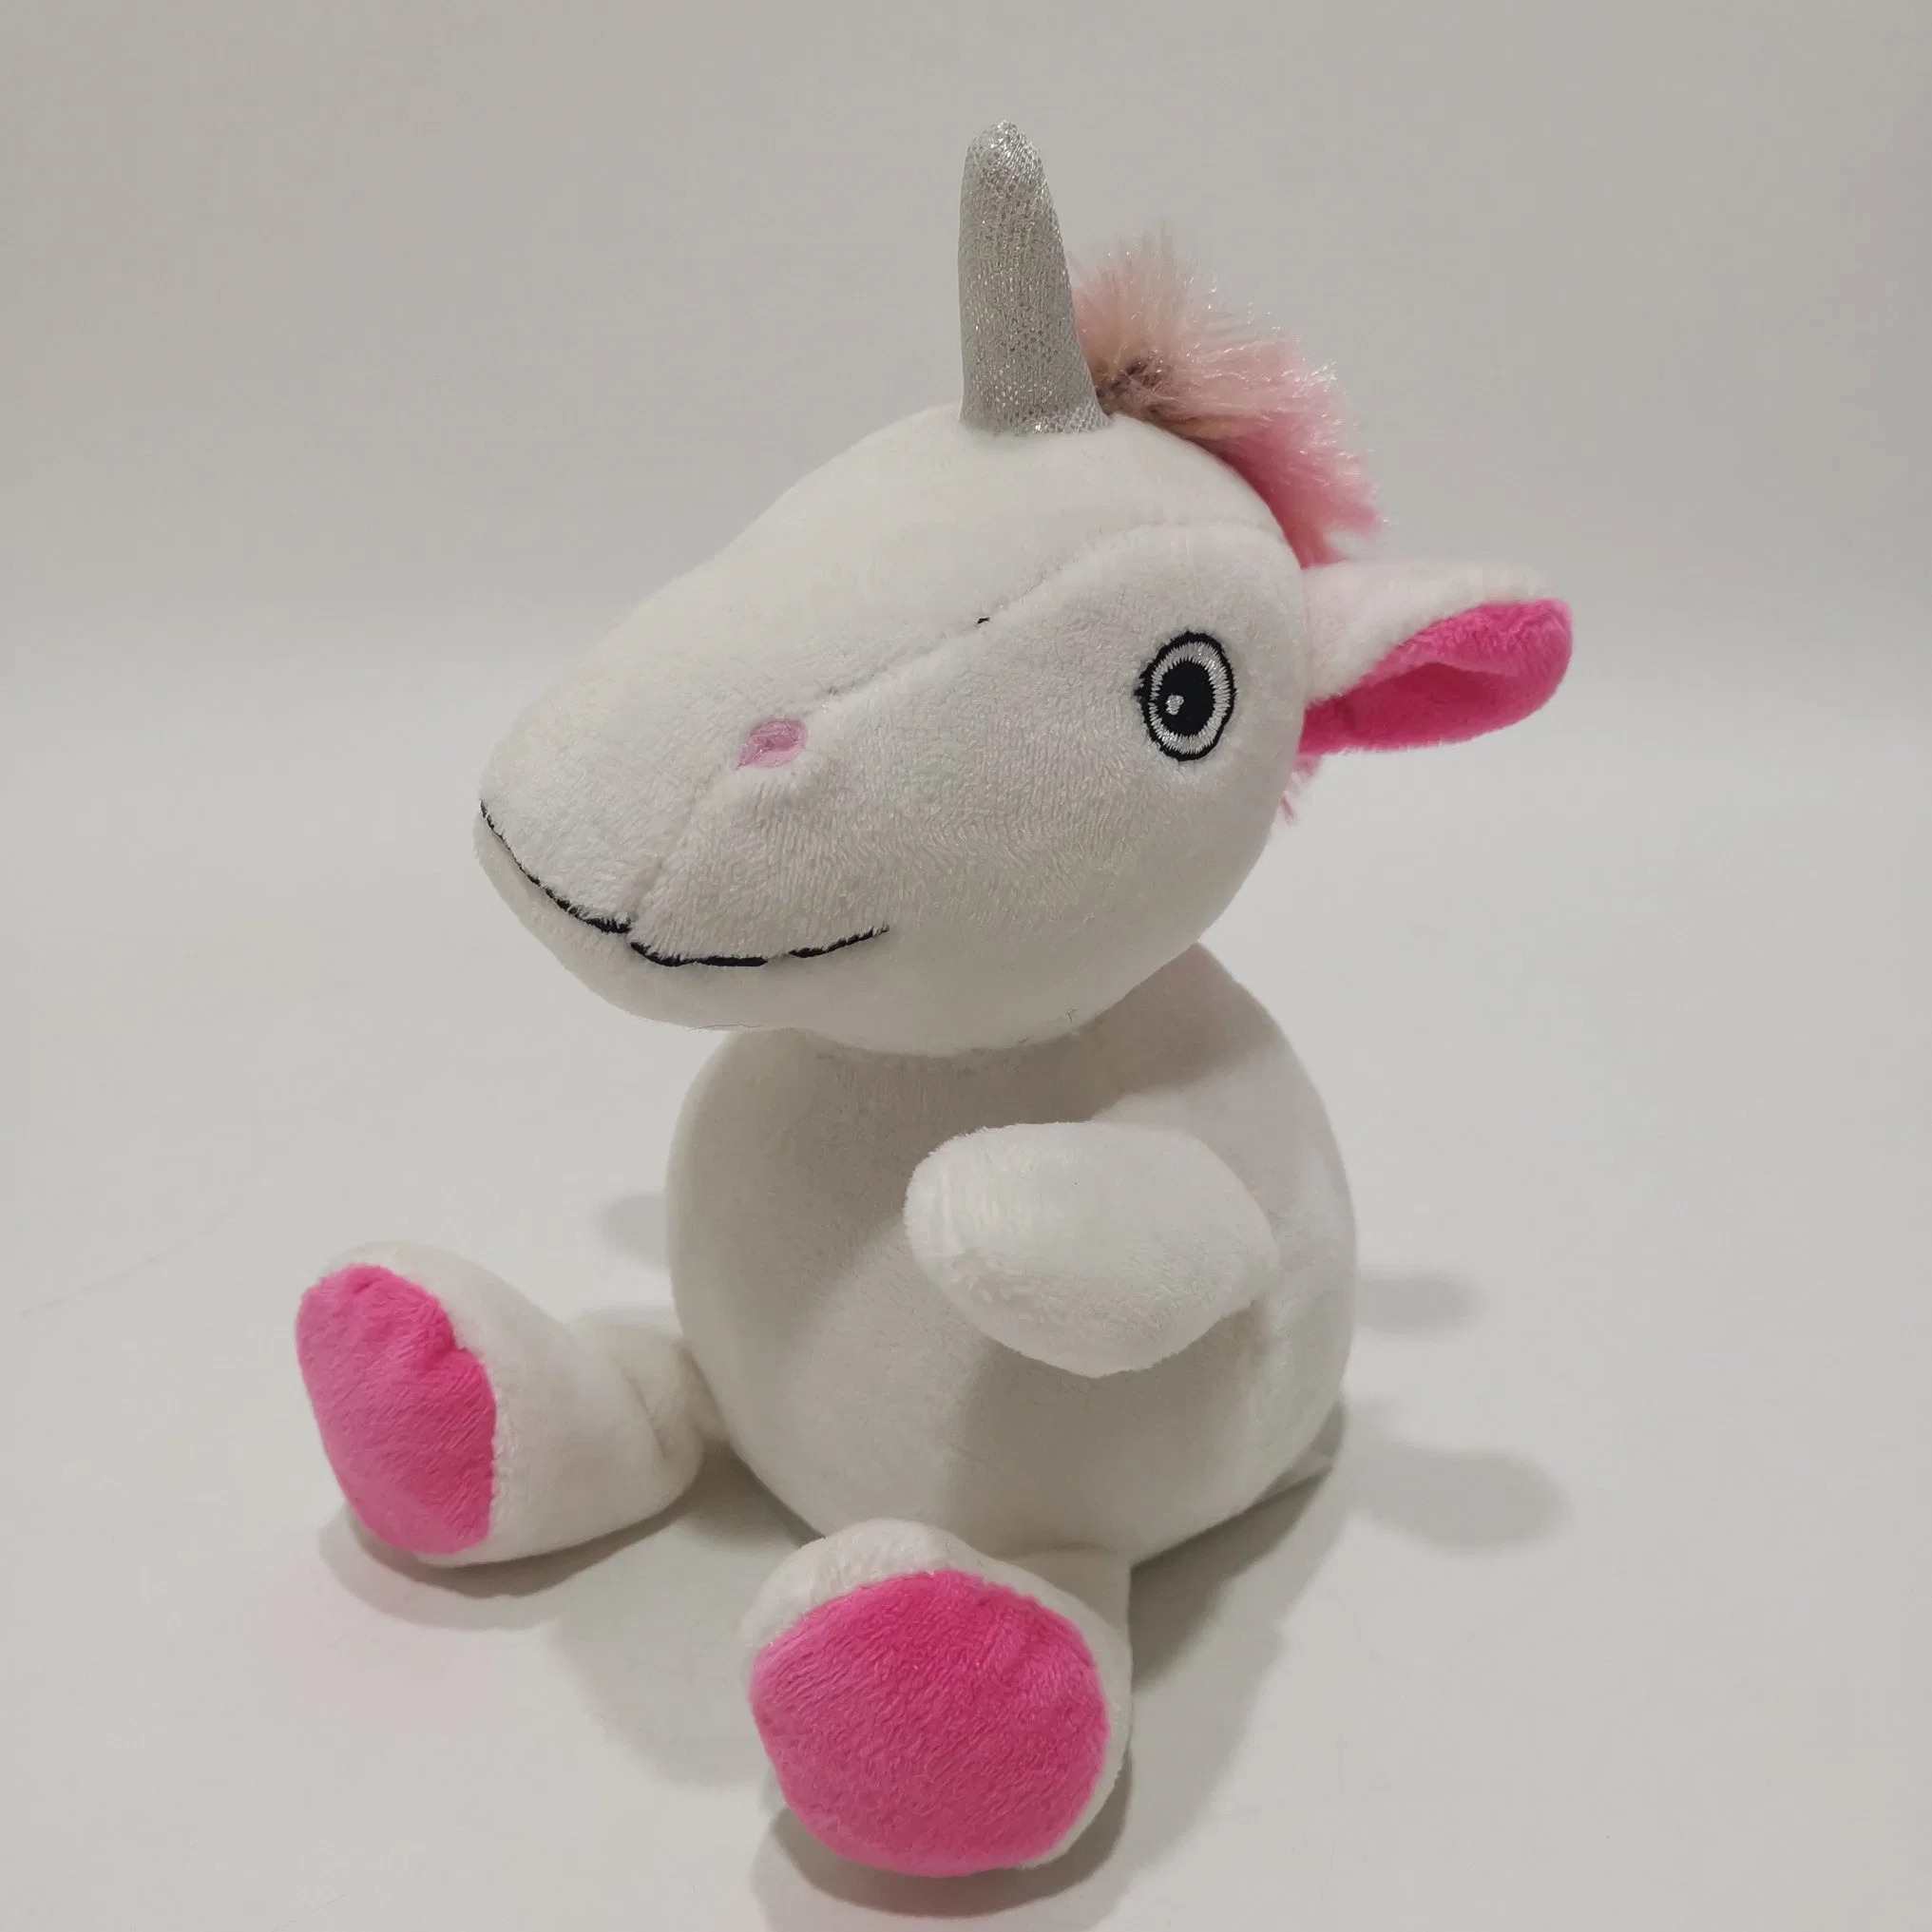 Talking Back Animated Plush Unicorn Toys for Kids